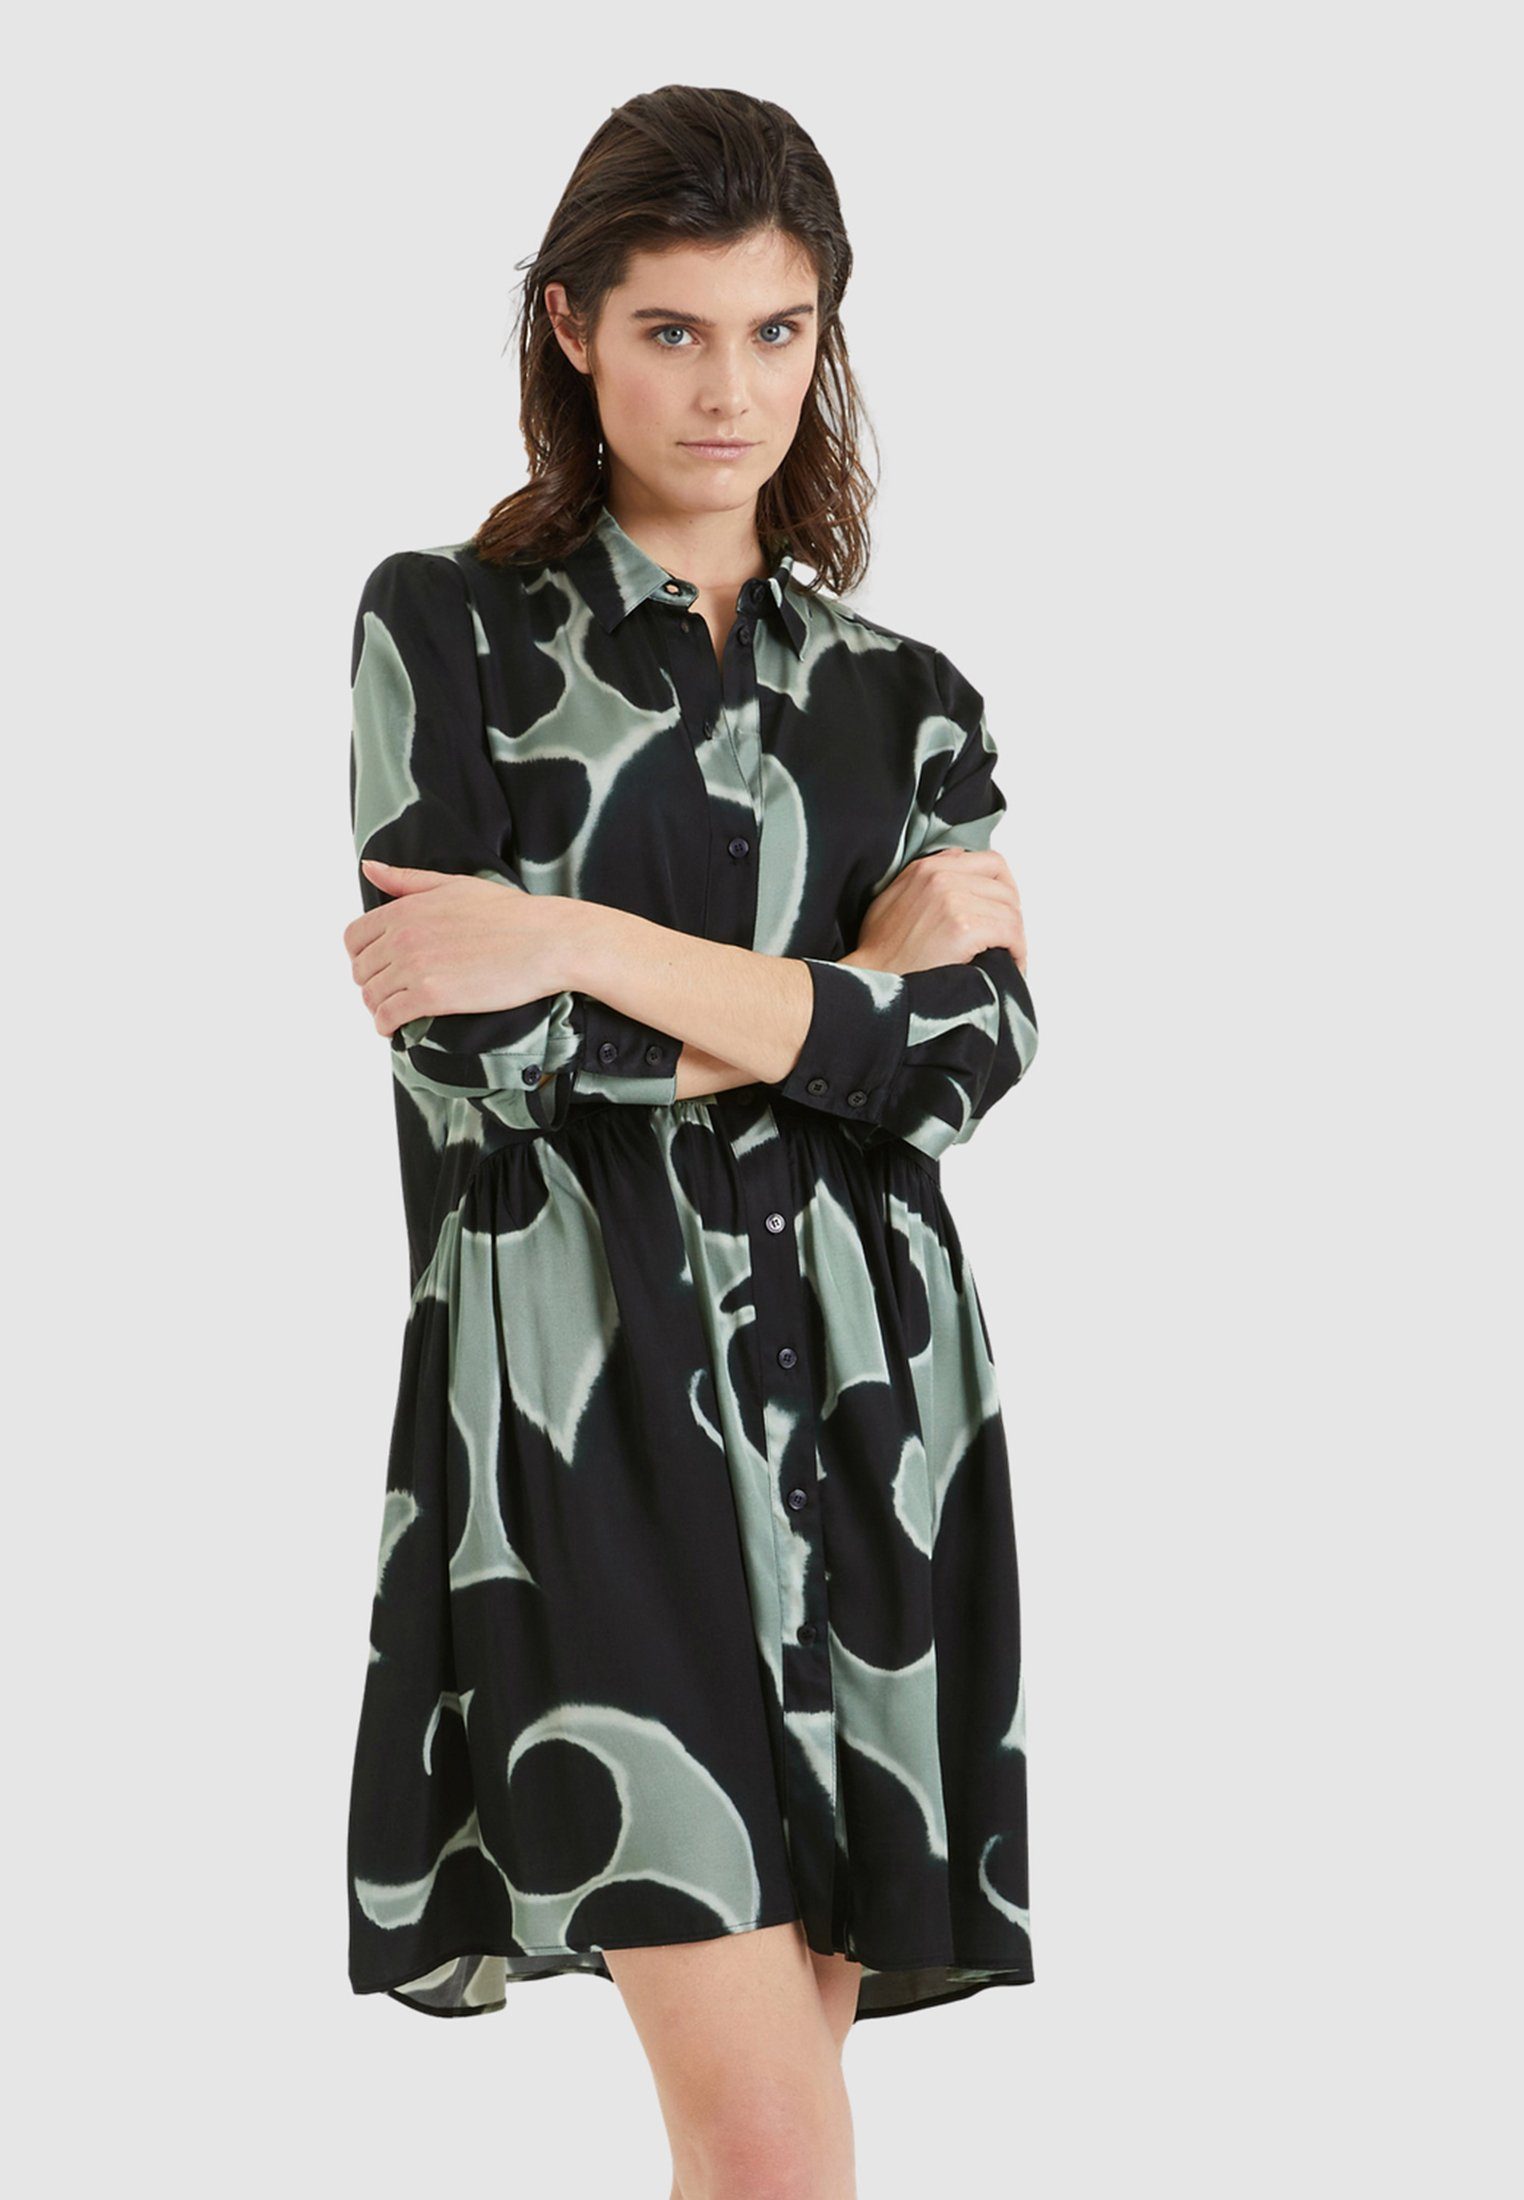 MARC AUREL Hemdblusenkleid mit Maxiprint online kaufen | OTTO